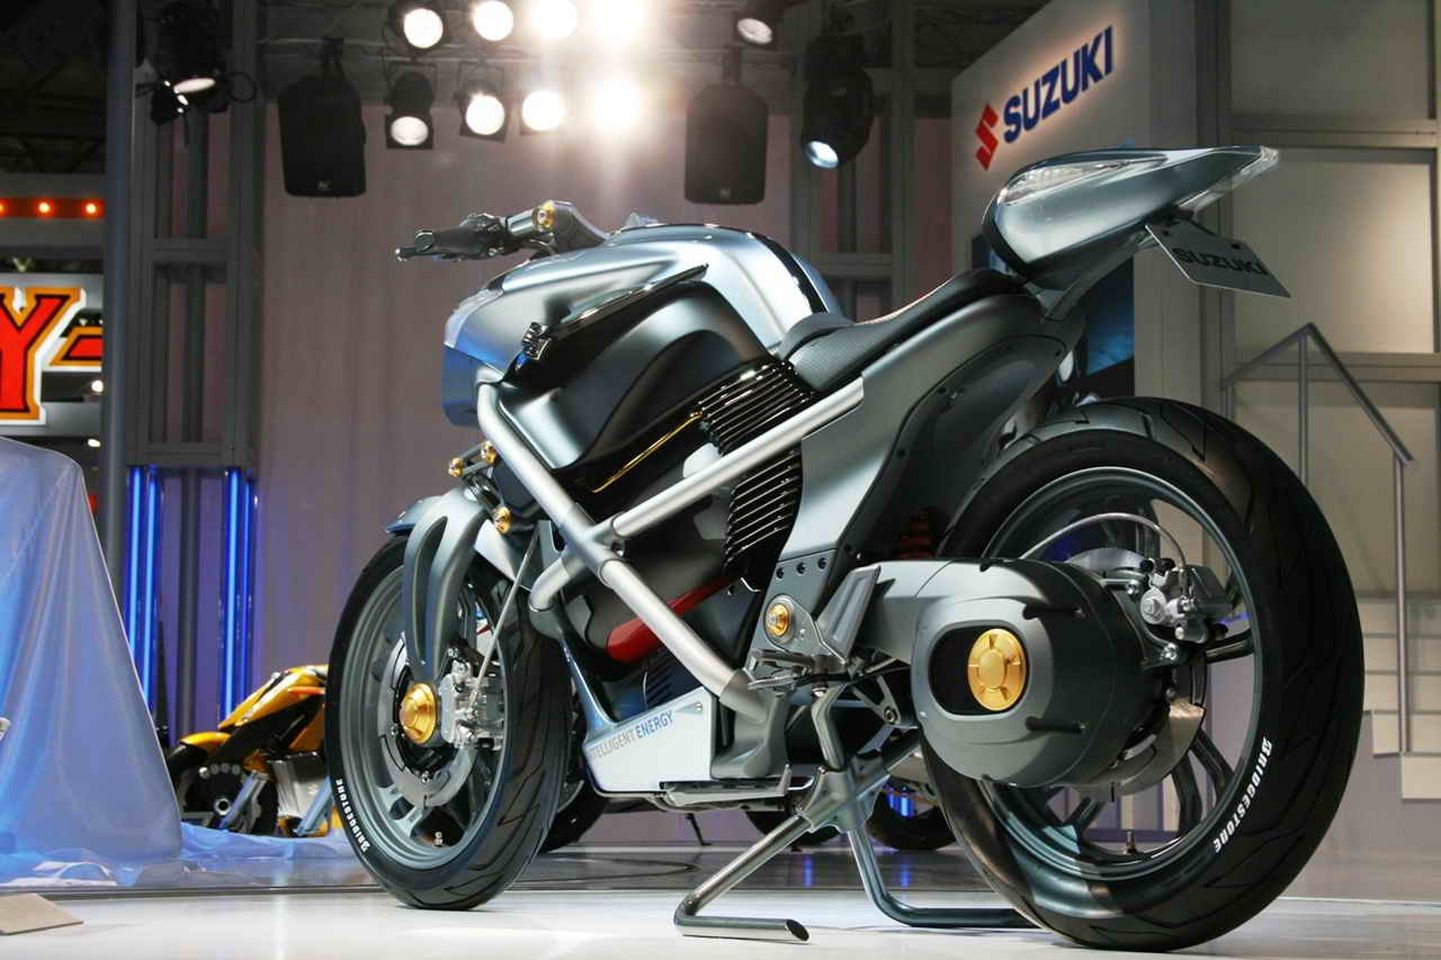 Suzuki Crosscage concept